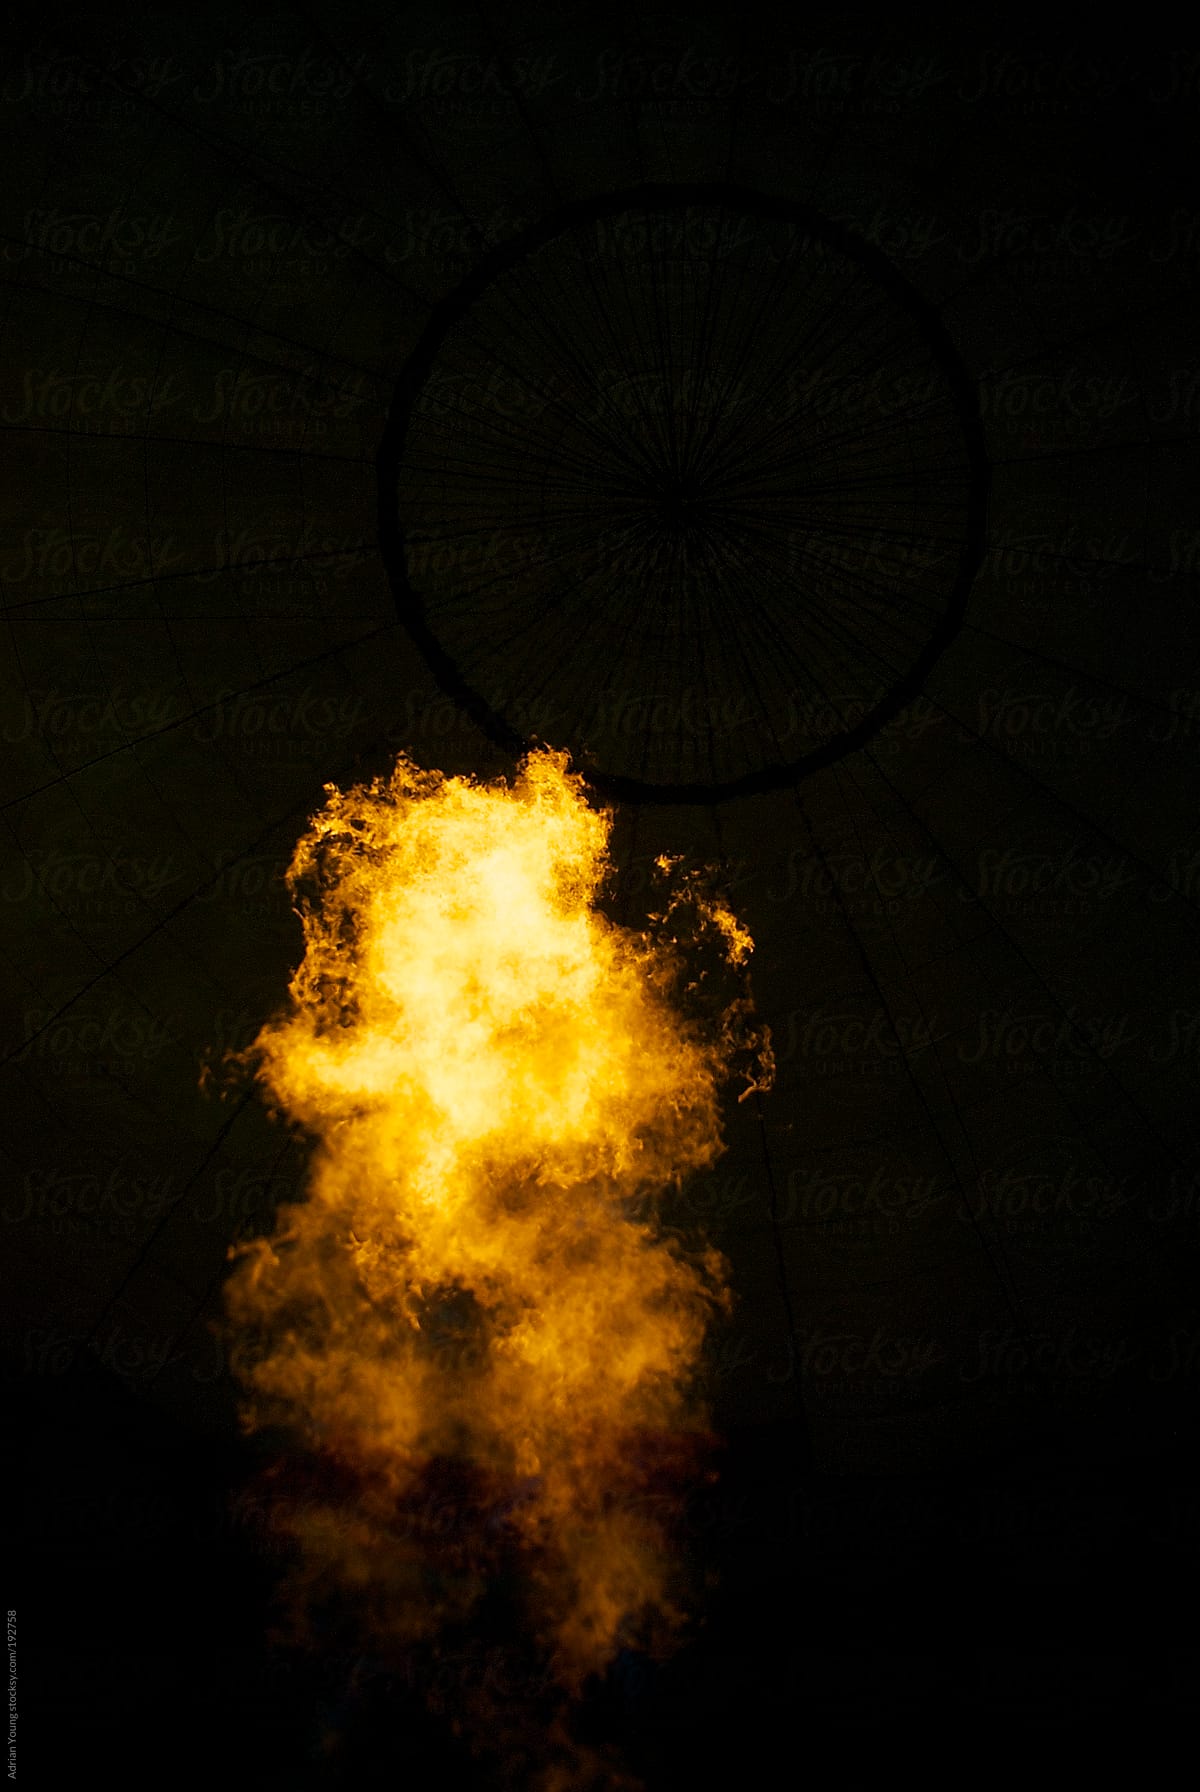 Burner Flame Inside a Hot Air Balloon